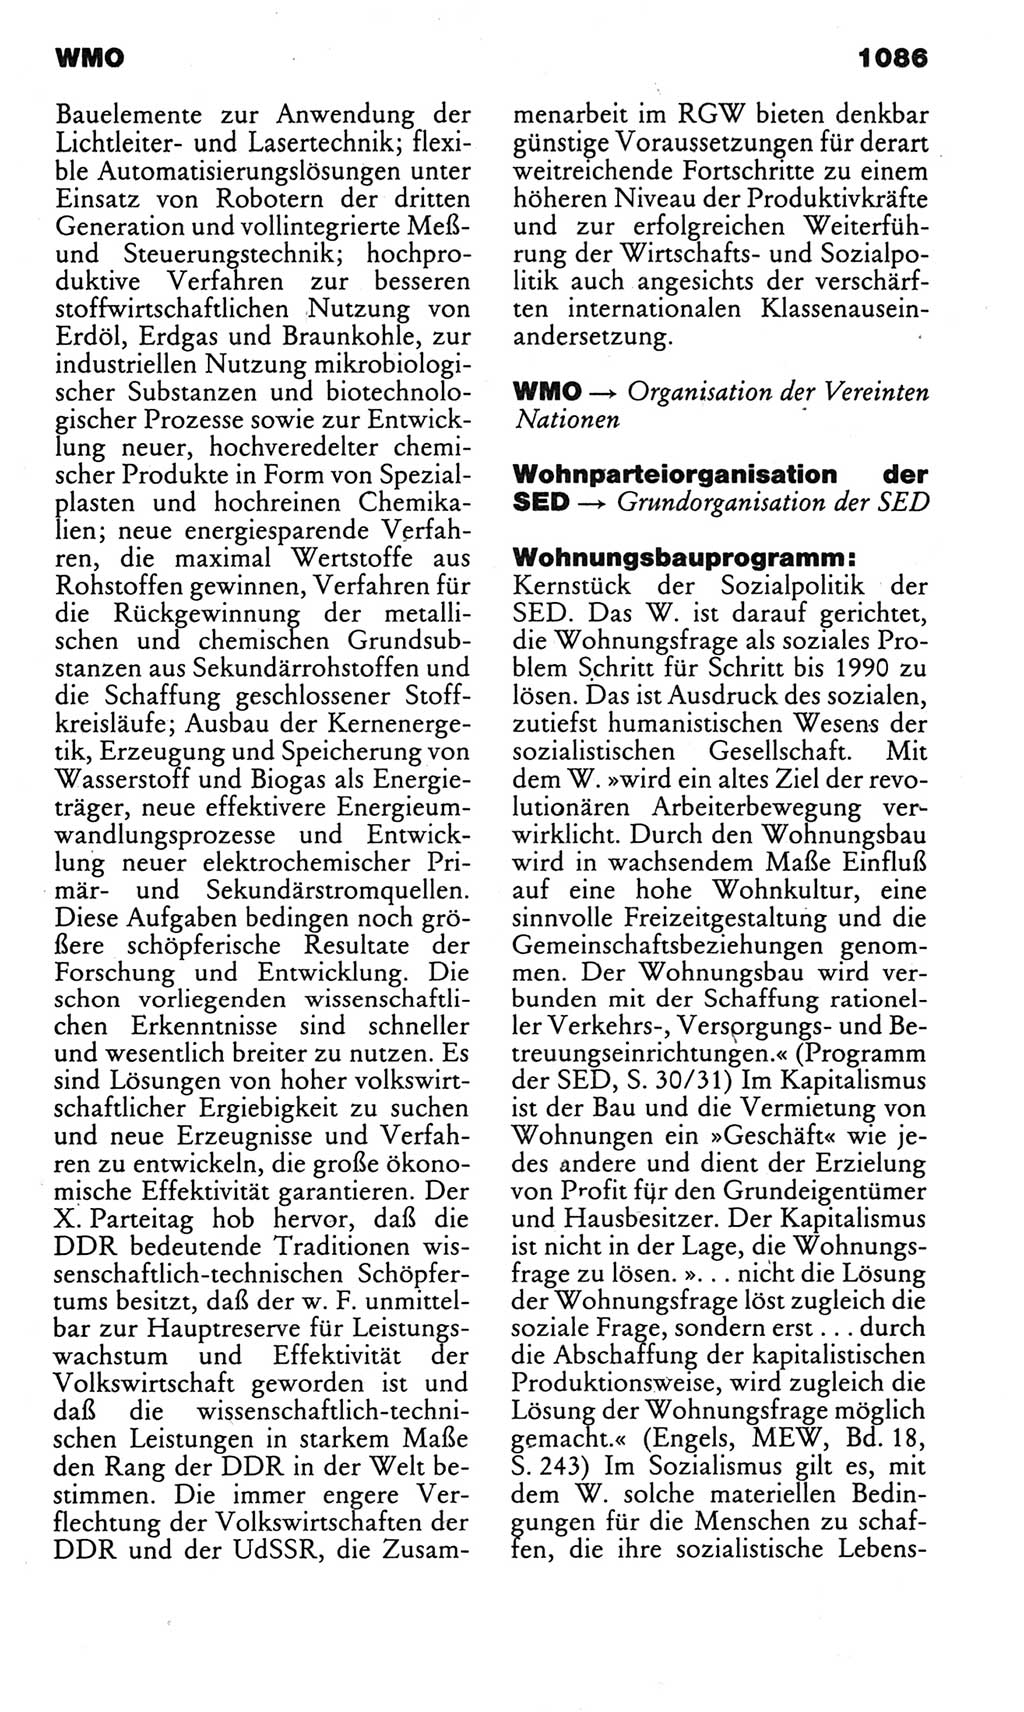 Kleines politisches Wörterbuch [Deutsche Demokratische Republik (DDR)] 1985, Seite 1086 (Kl. pol. Wb. DDR 1985, S. 1086)